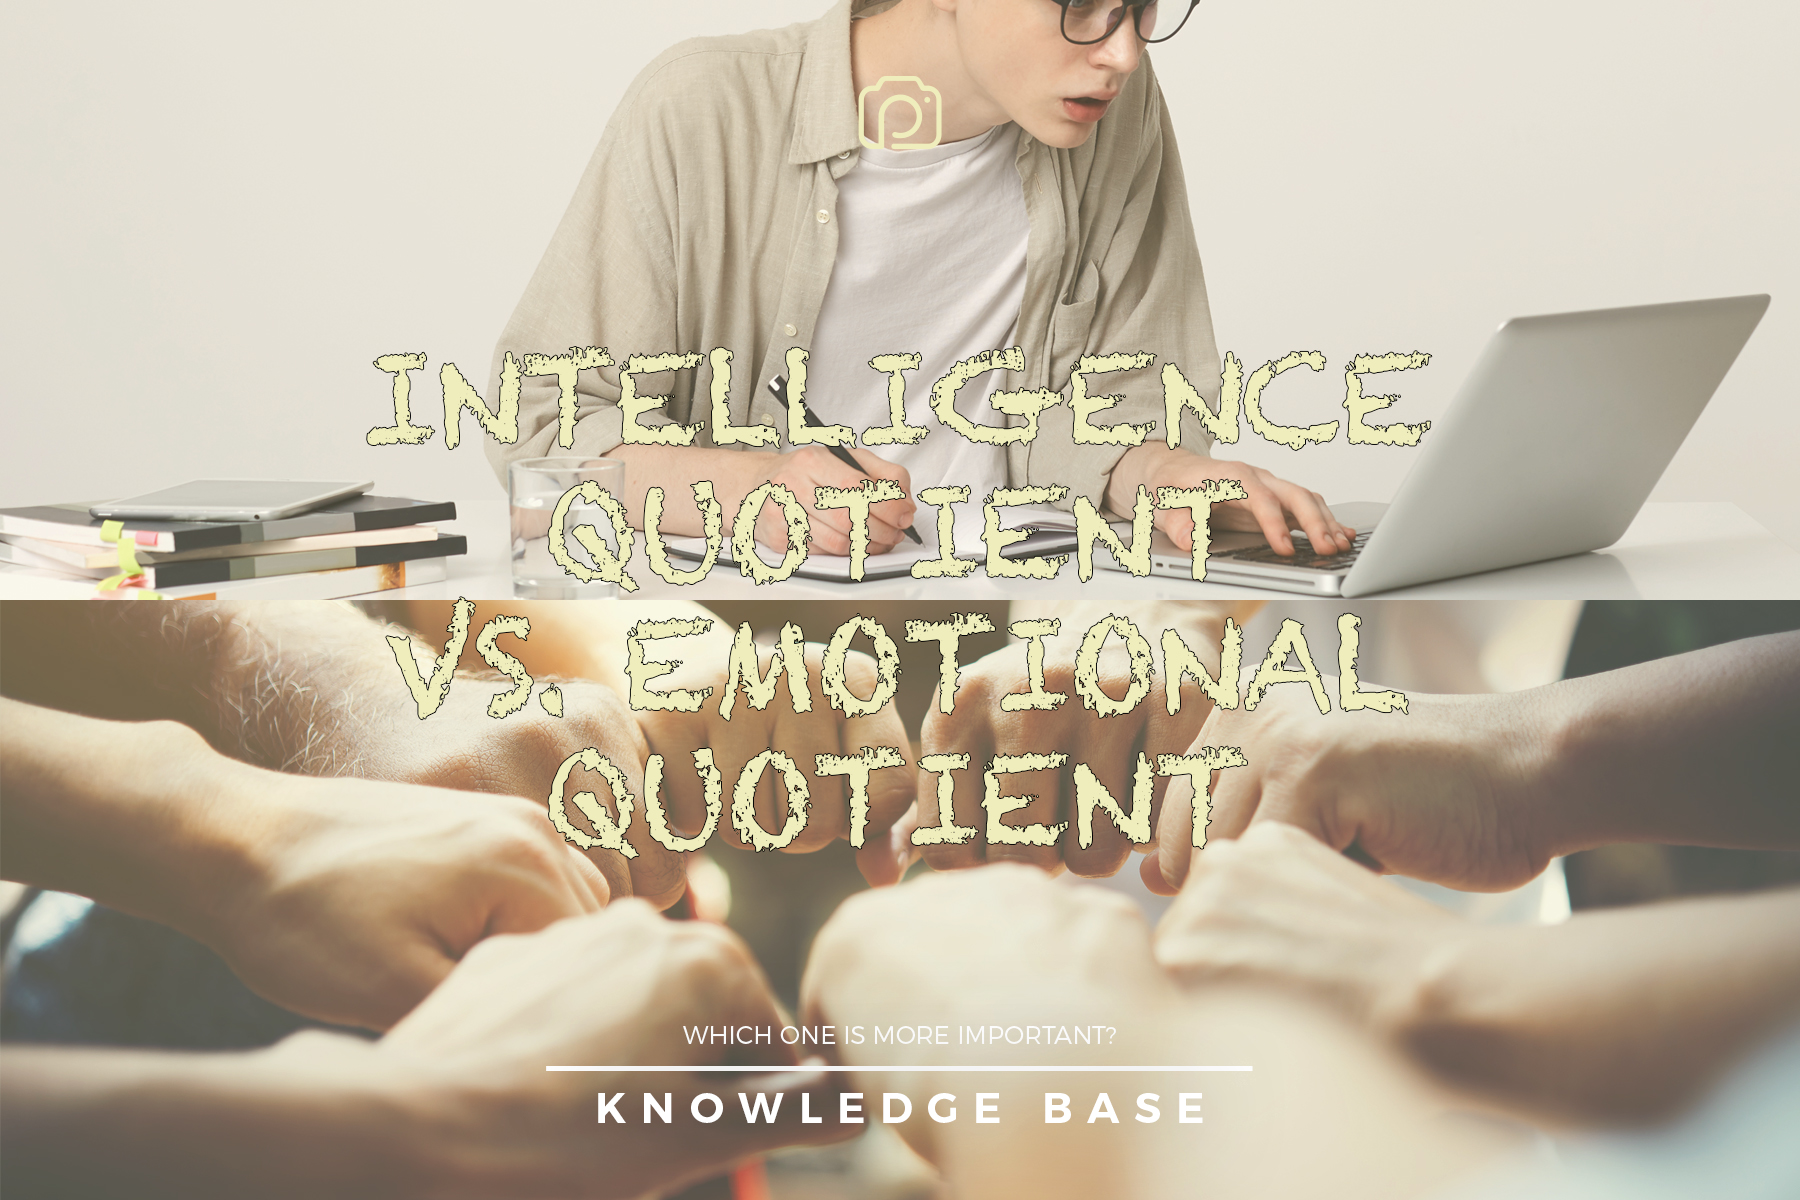 Intelligence quotient vs. emotional quotient